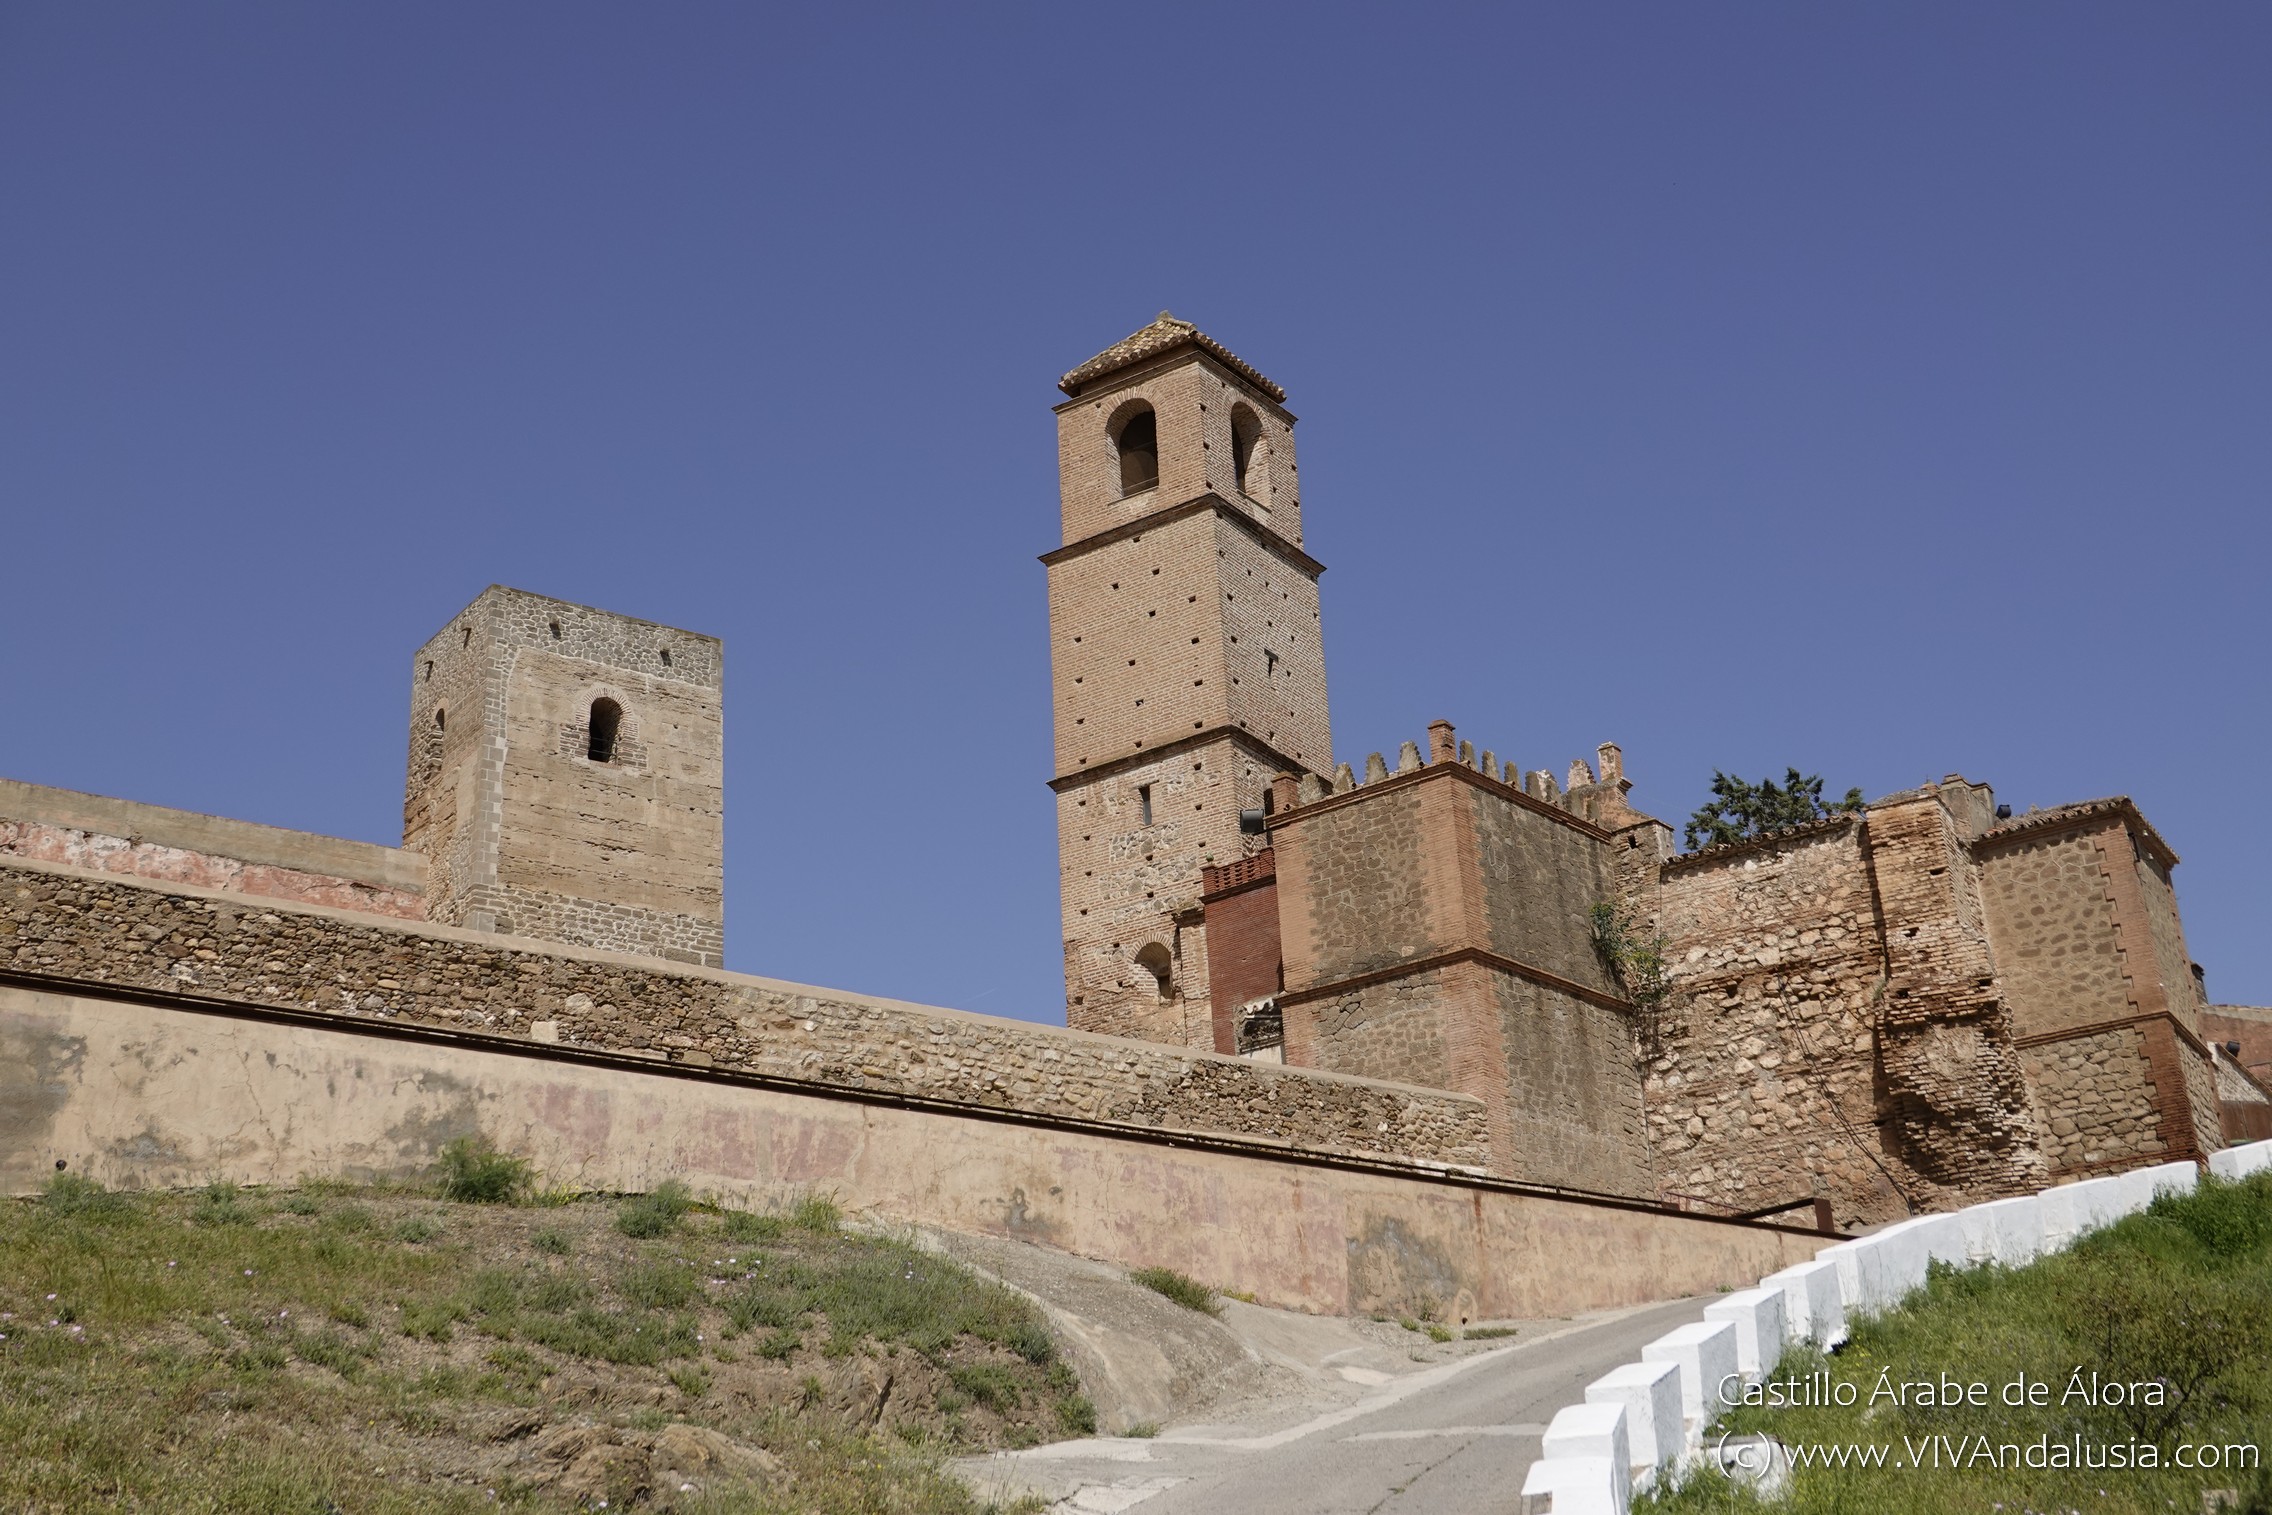 Castillo Árabe de Álora (Het Arabische Kasteel van Álora): Een Tijdloos Monument van Geschiedenis en Cultuur